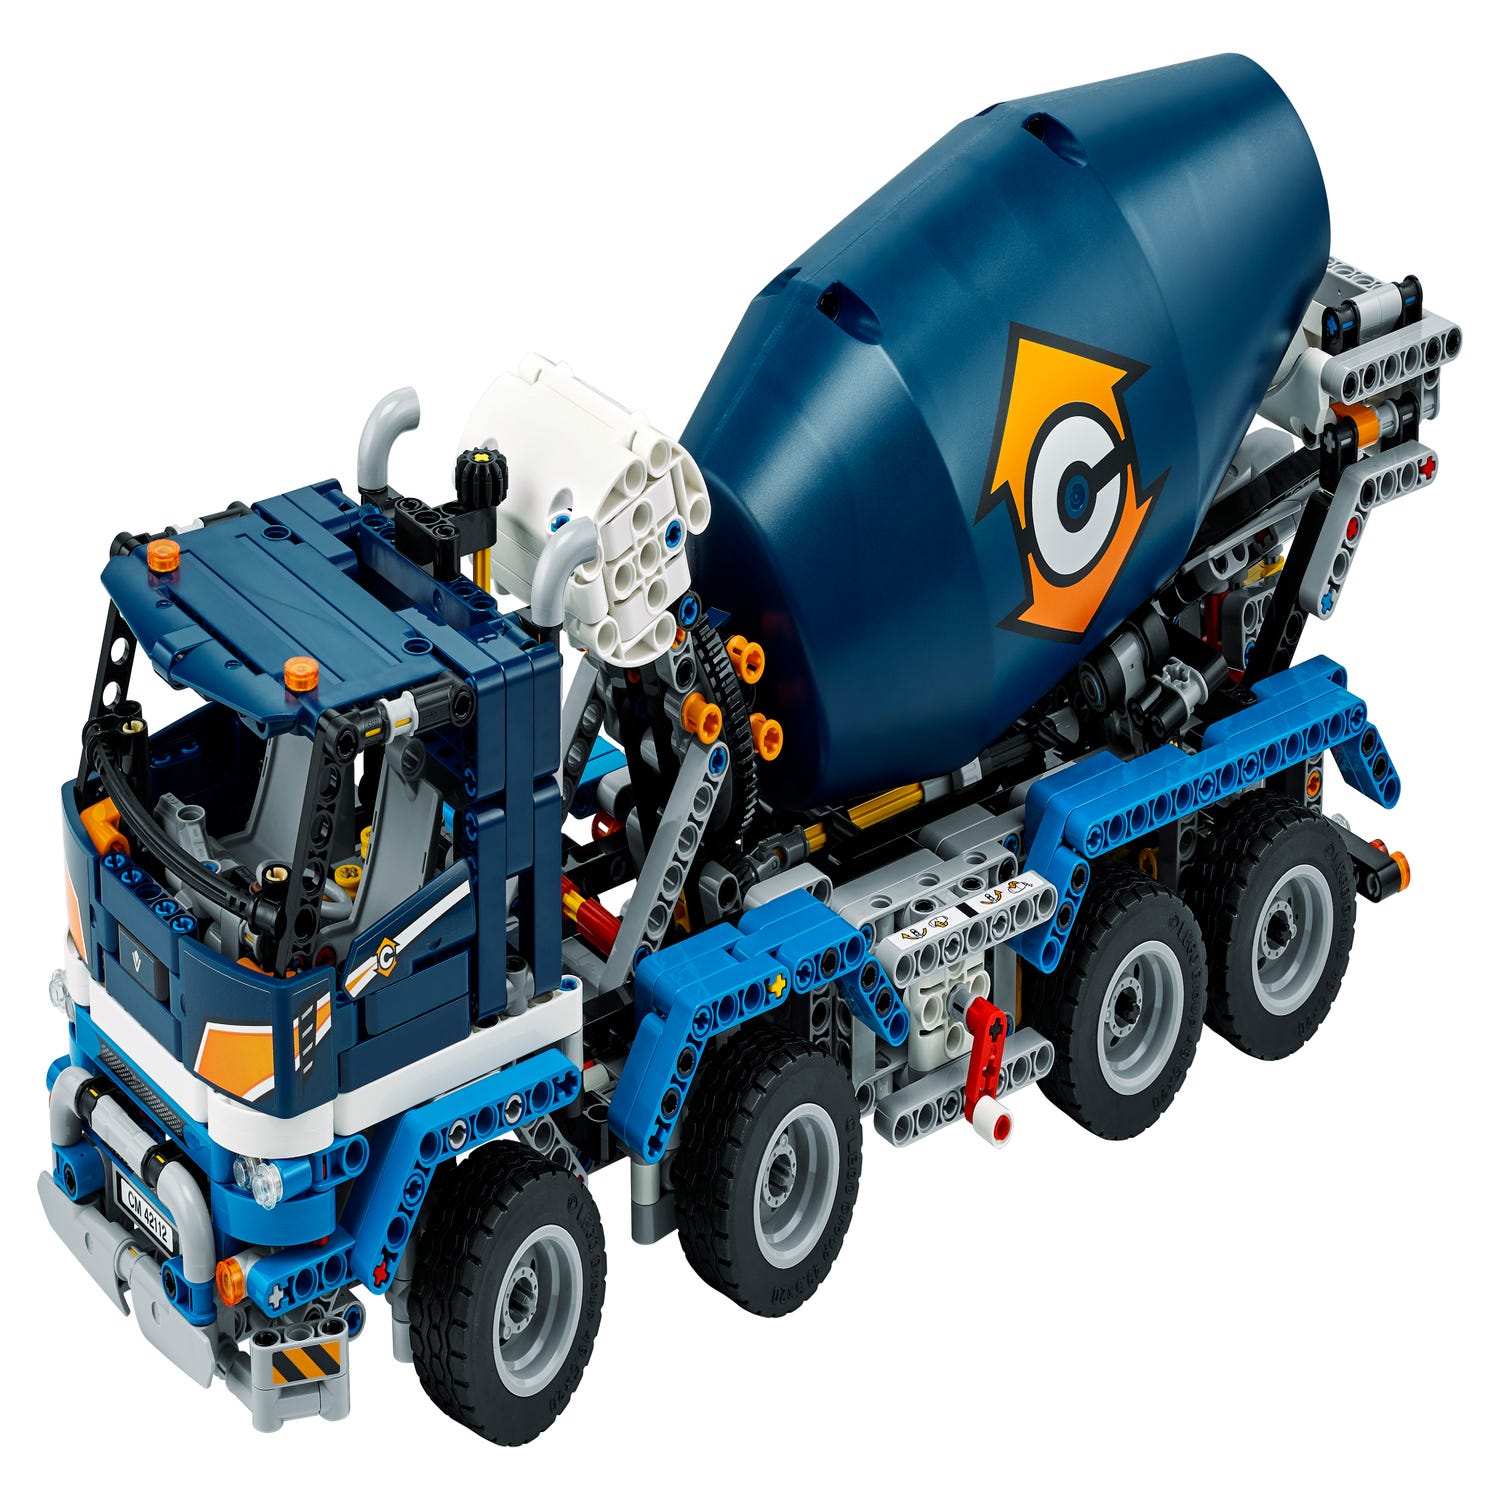 Le camion bétonnière 60325 | City | Boutique LEGO® officielle FR